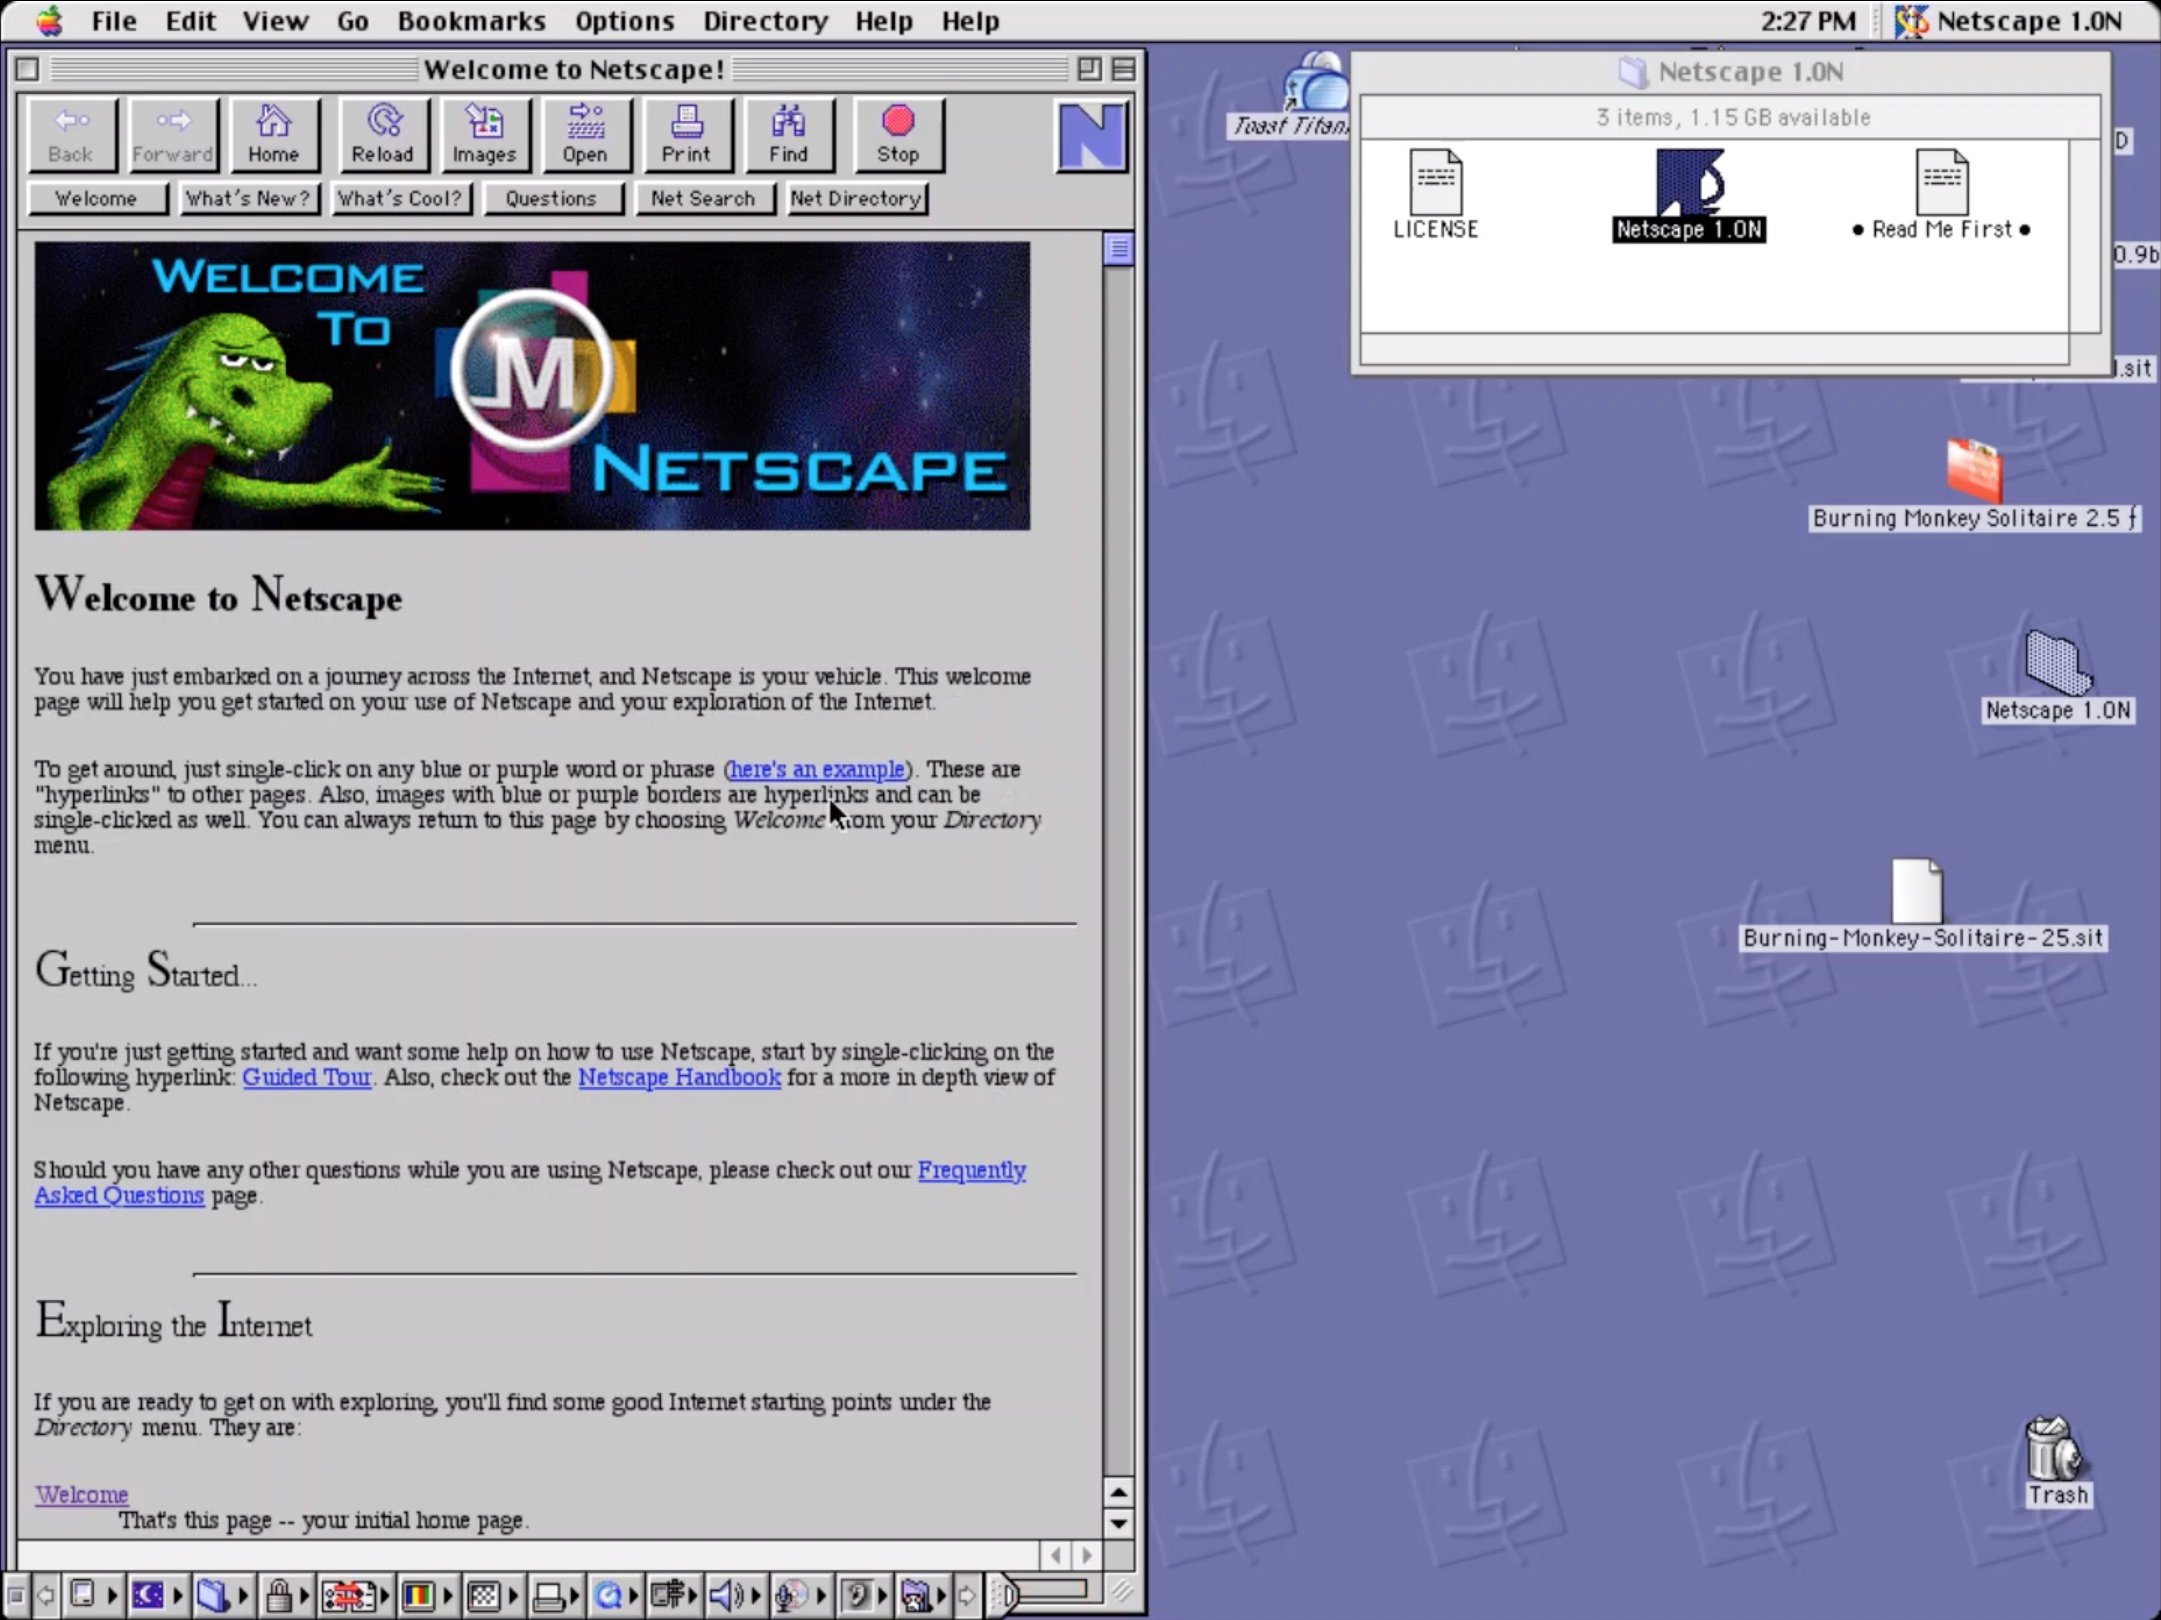 A screenshot of the original Netscape home page. Image courtesy of the versionmuseaum.com